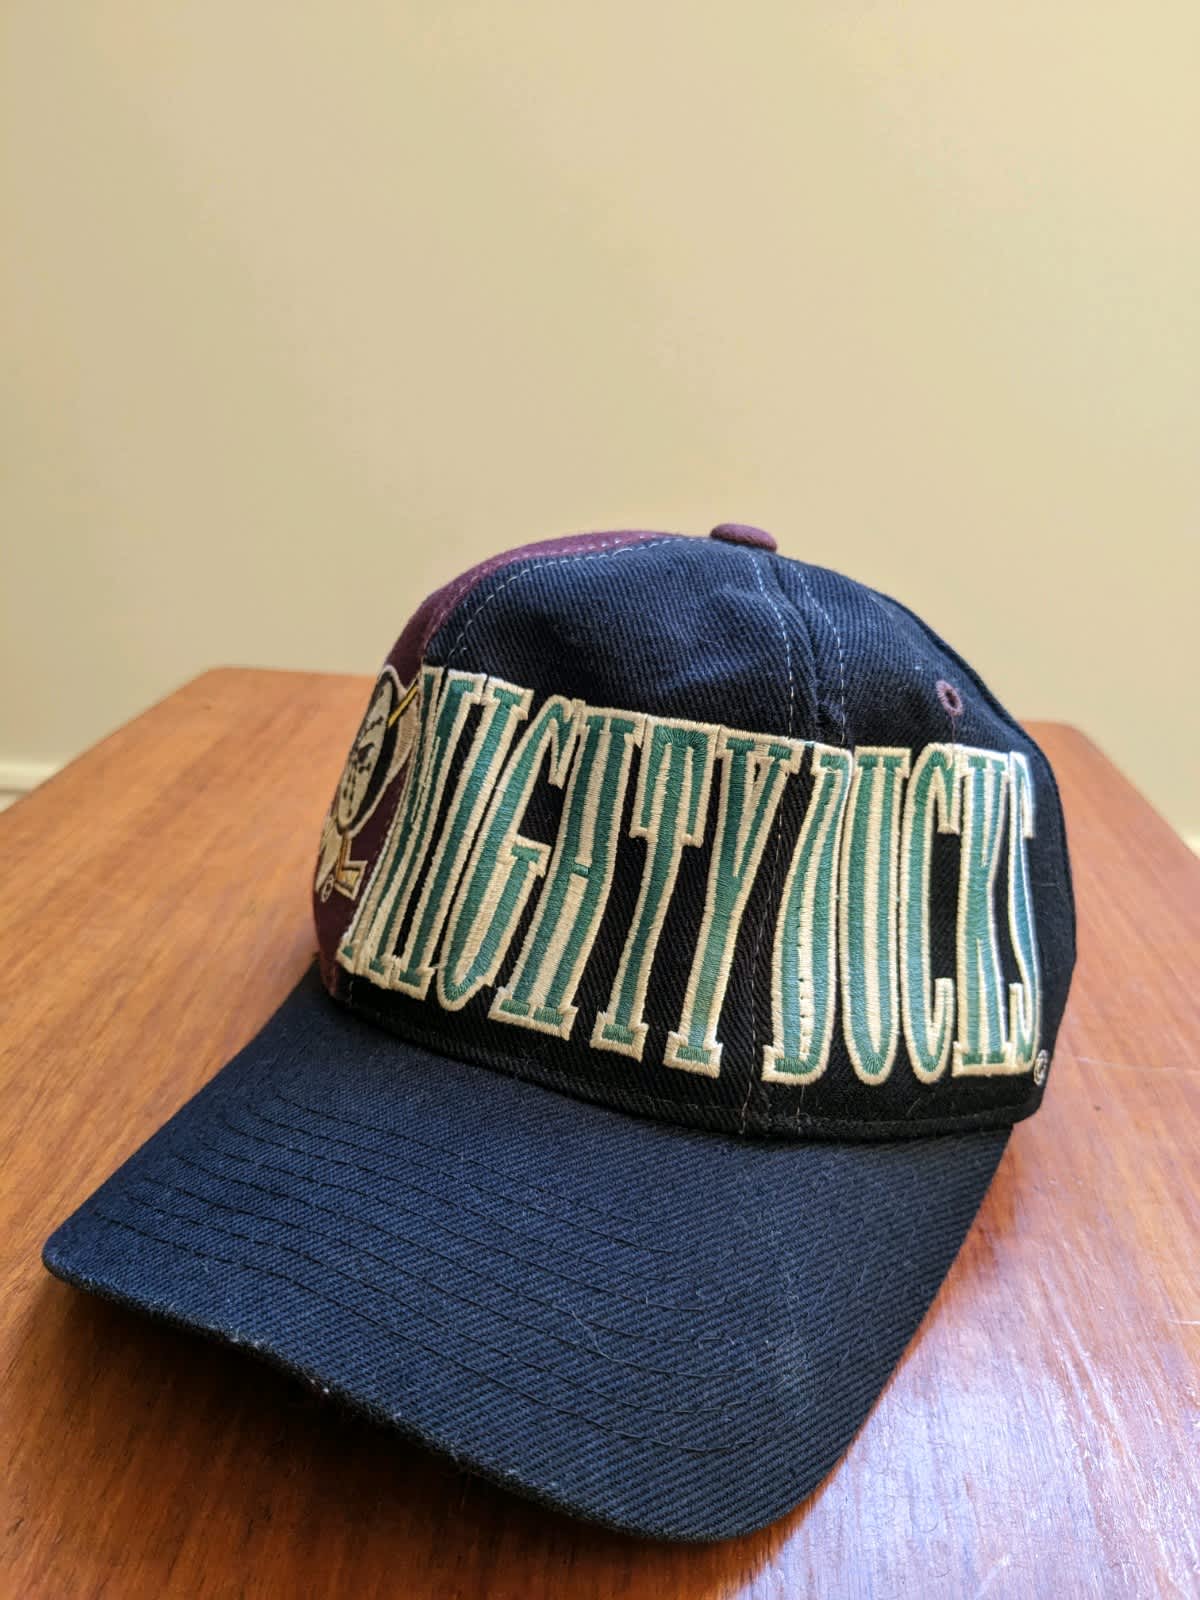 Vintage 90s Anaheim Mighty Ducks NHL Starter Tri Power Snapback Hat Cap